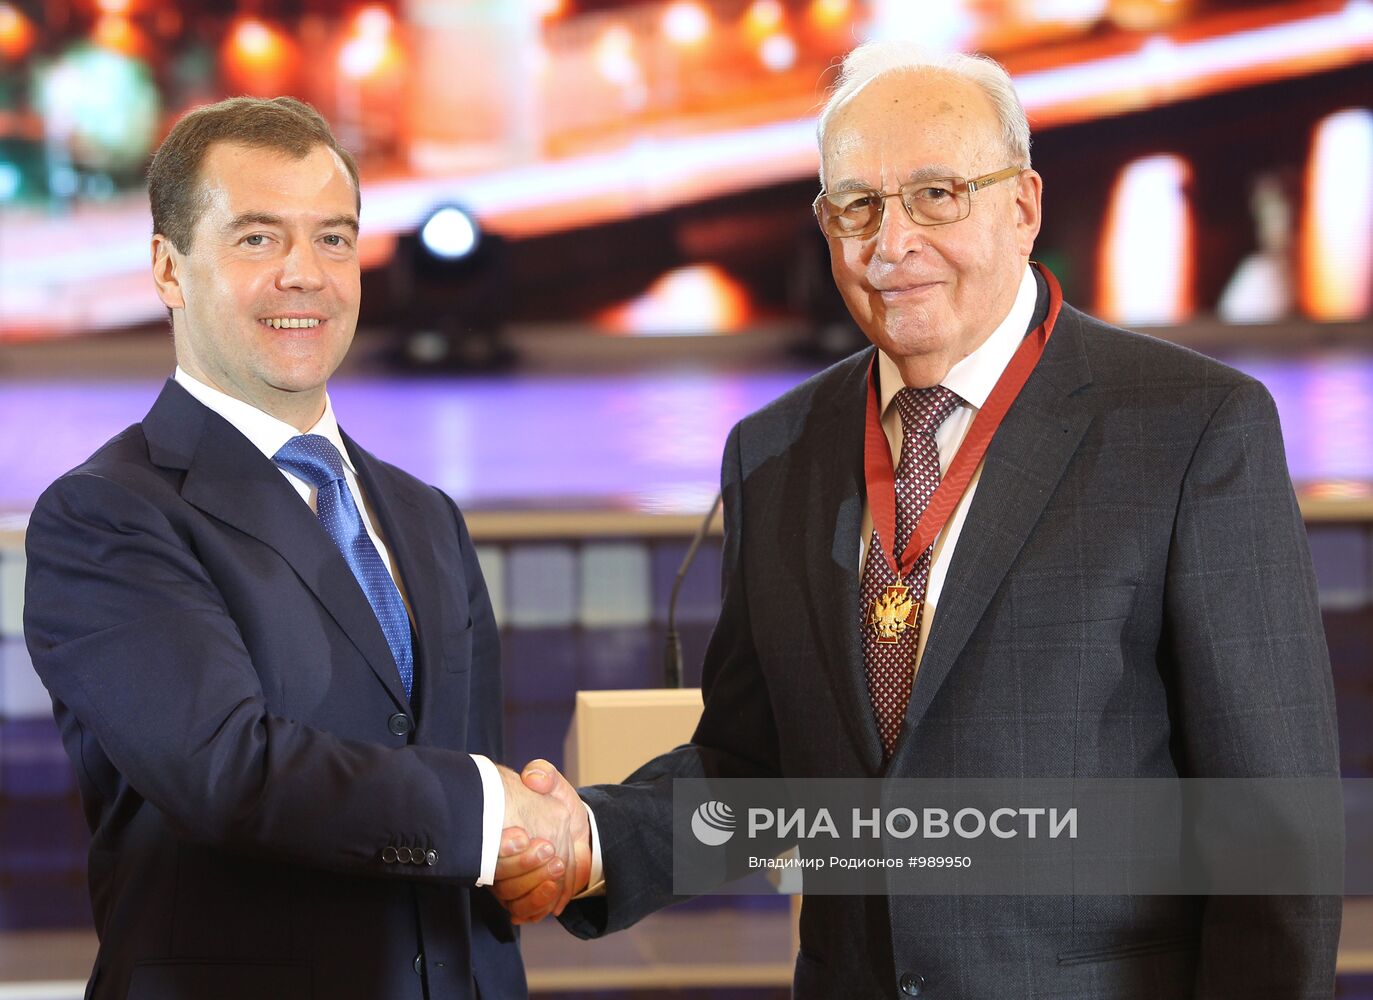 Вручение Д.Медведевым государственных наград